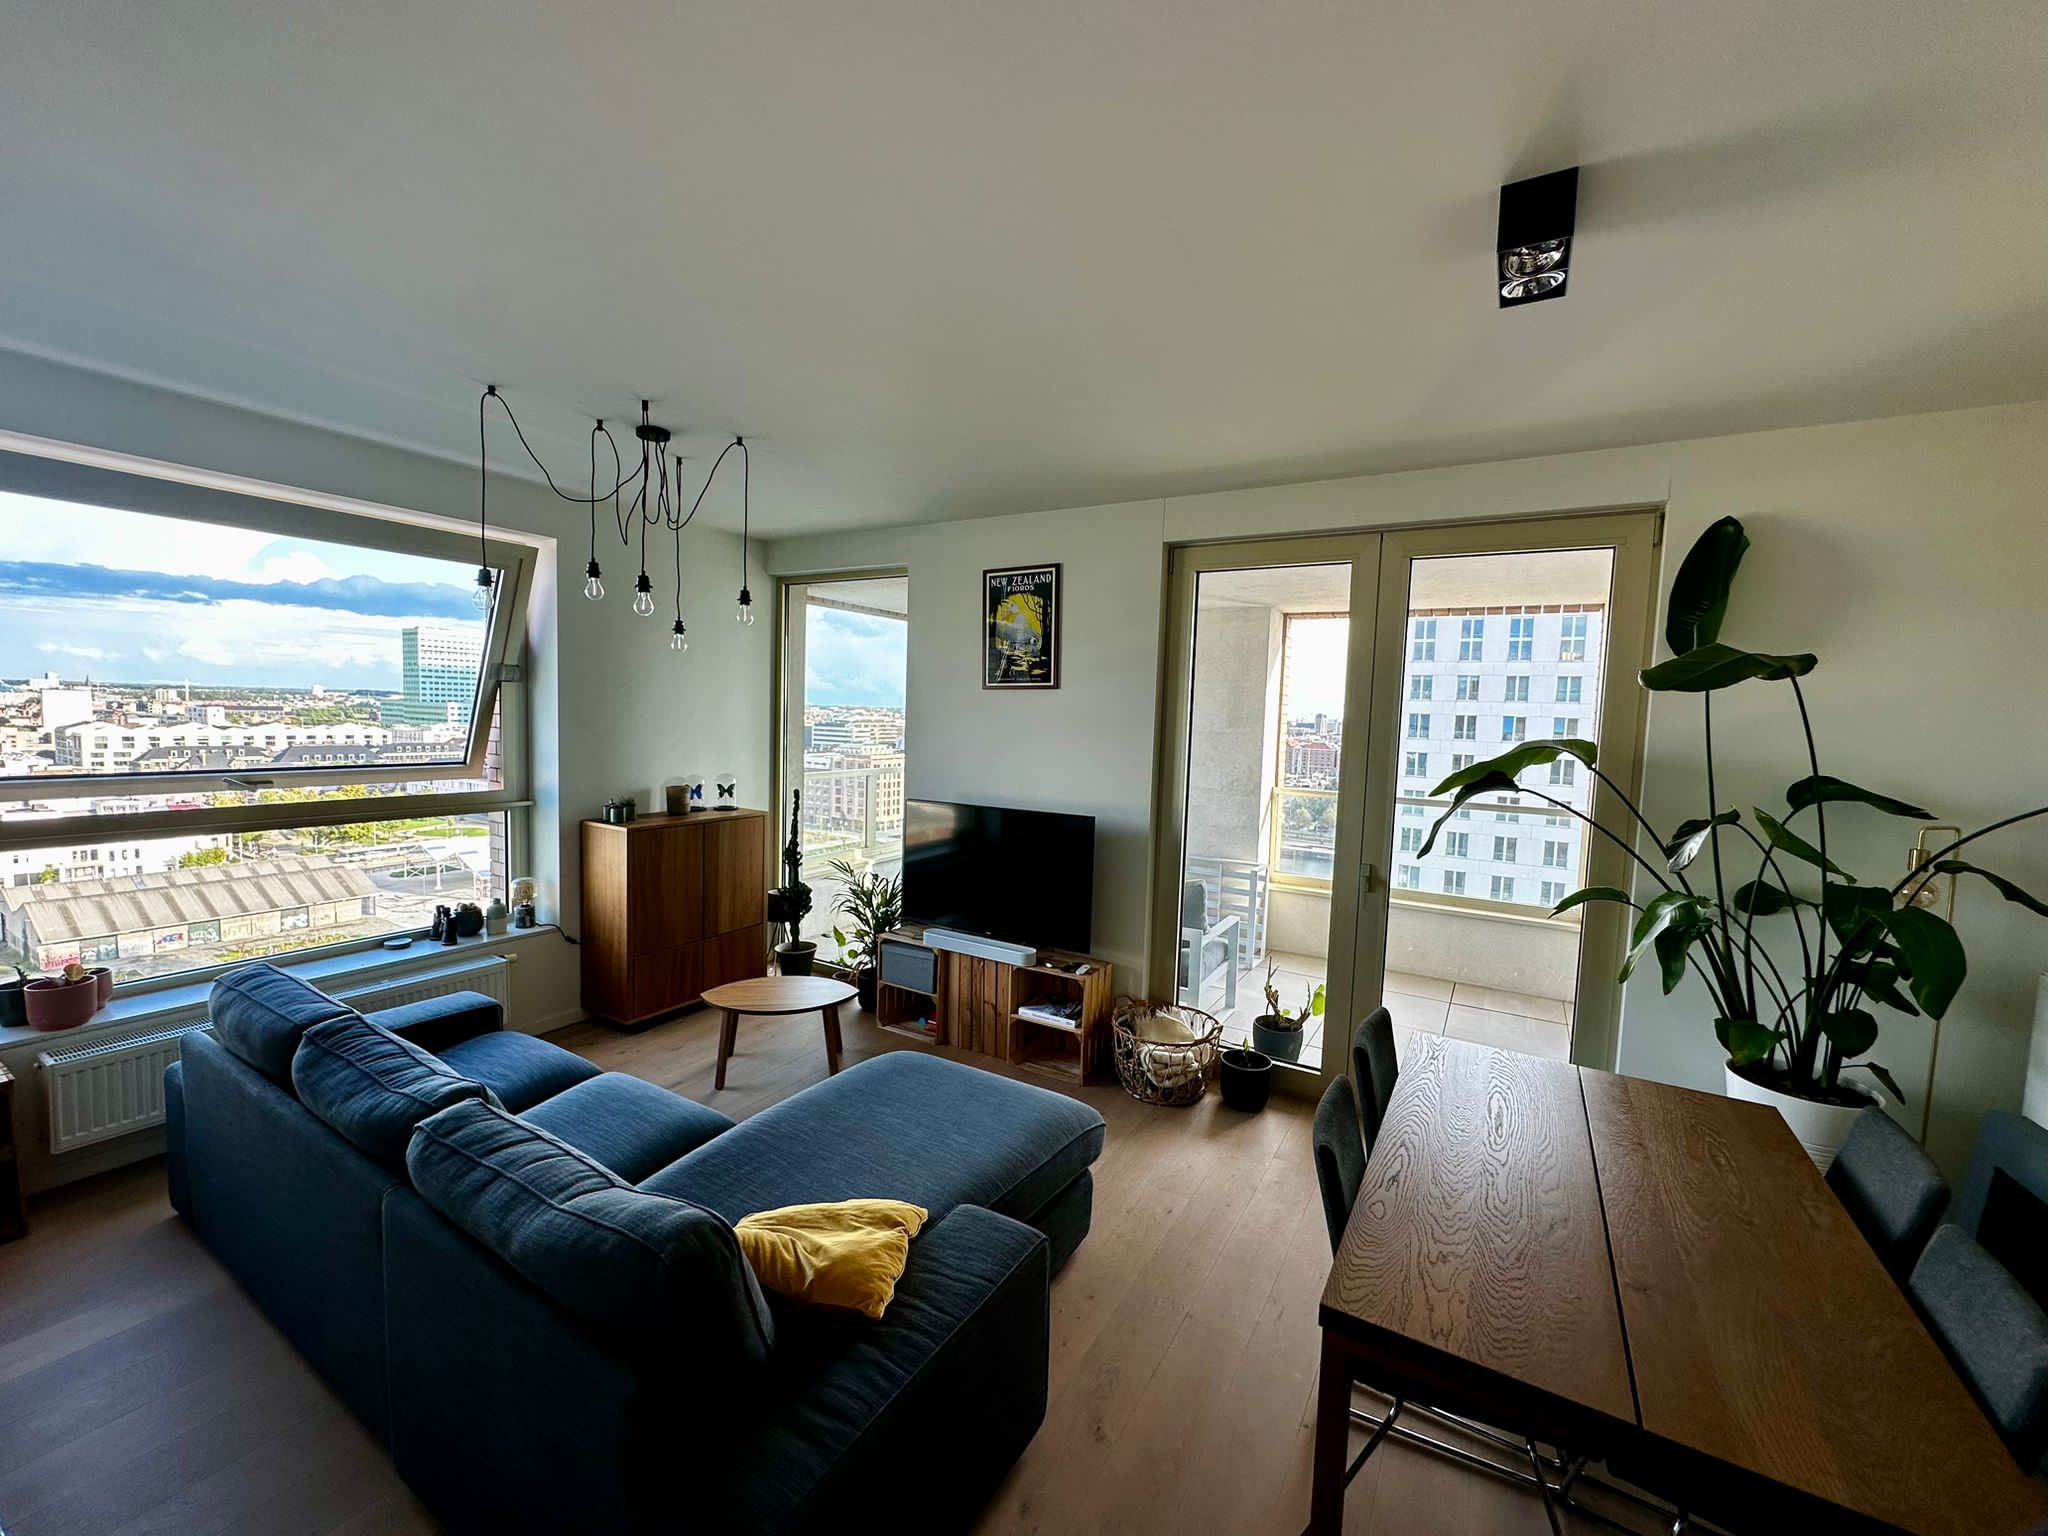 Eilandje, luxury apartment for rent in antwerp living room